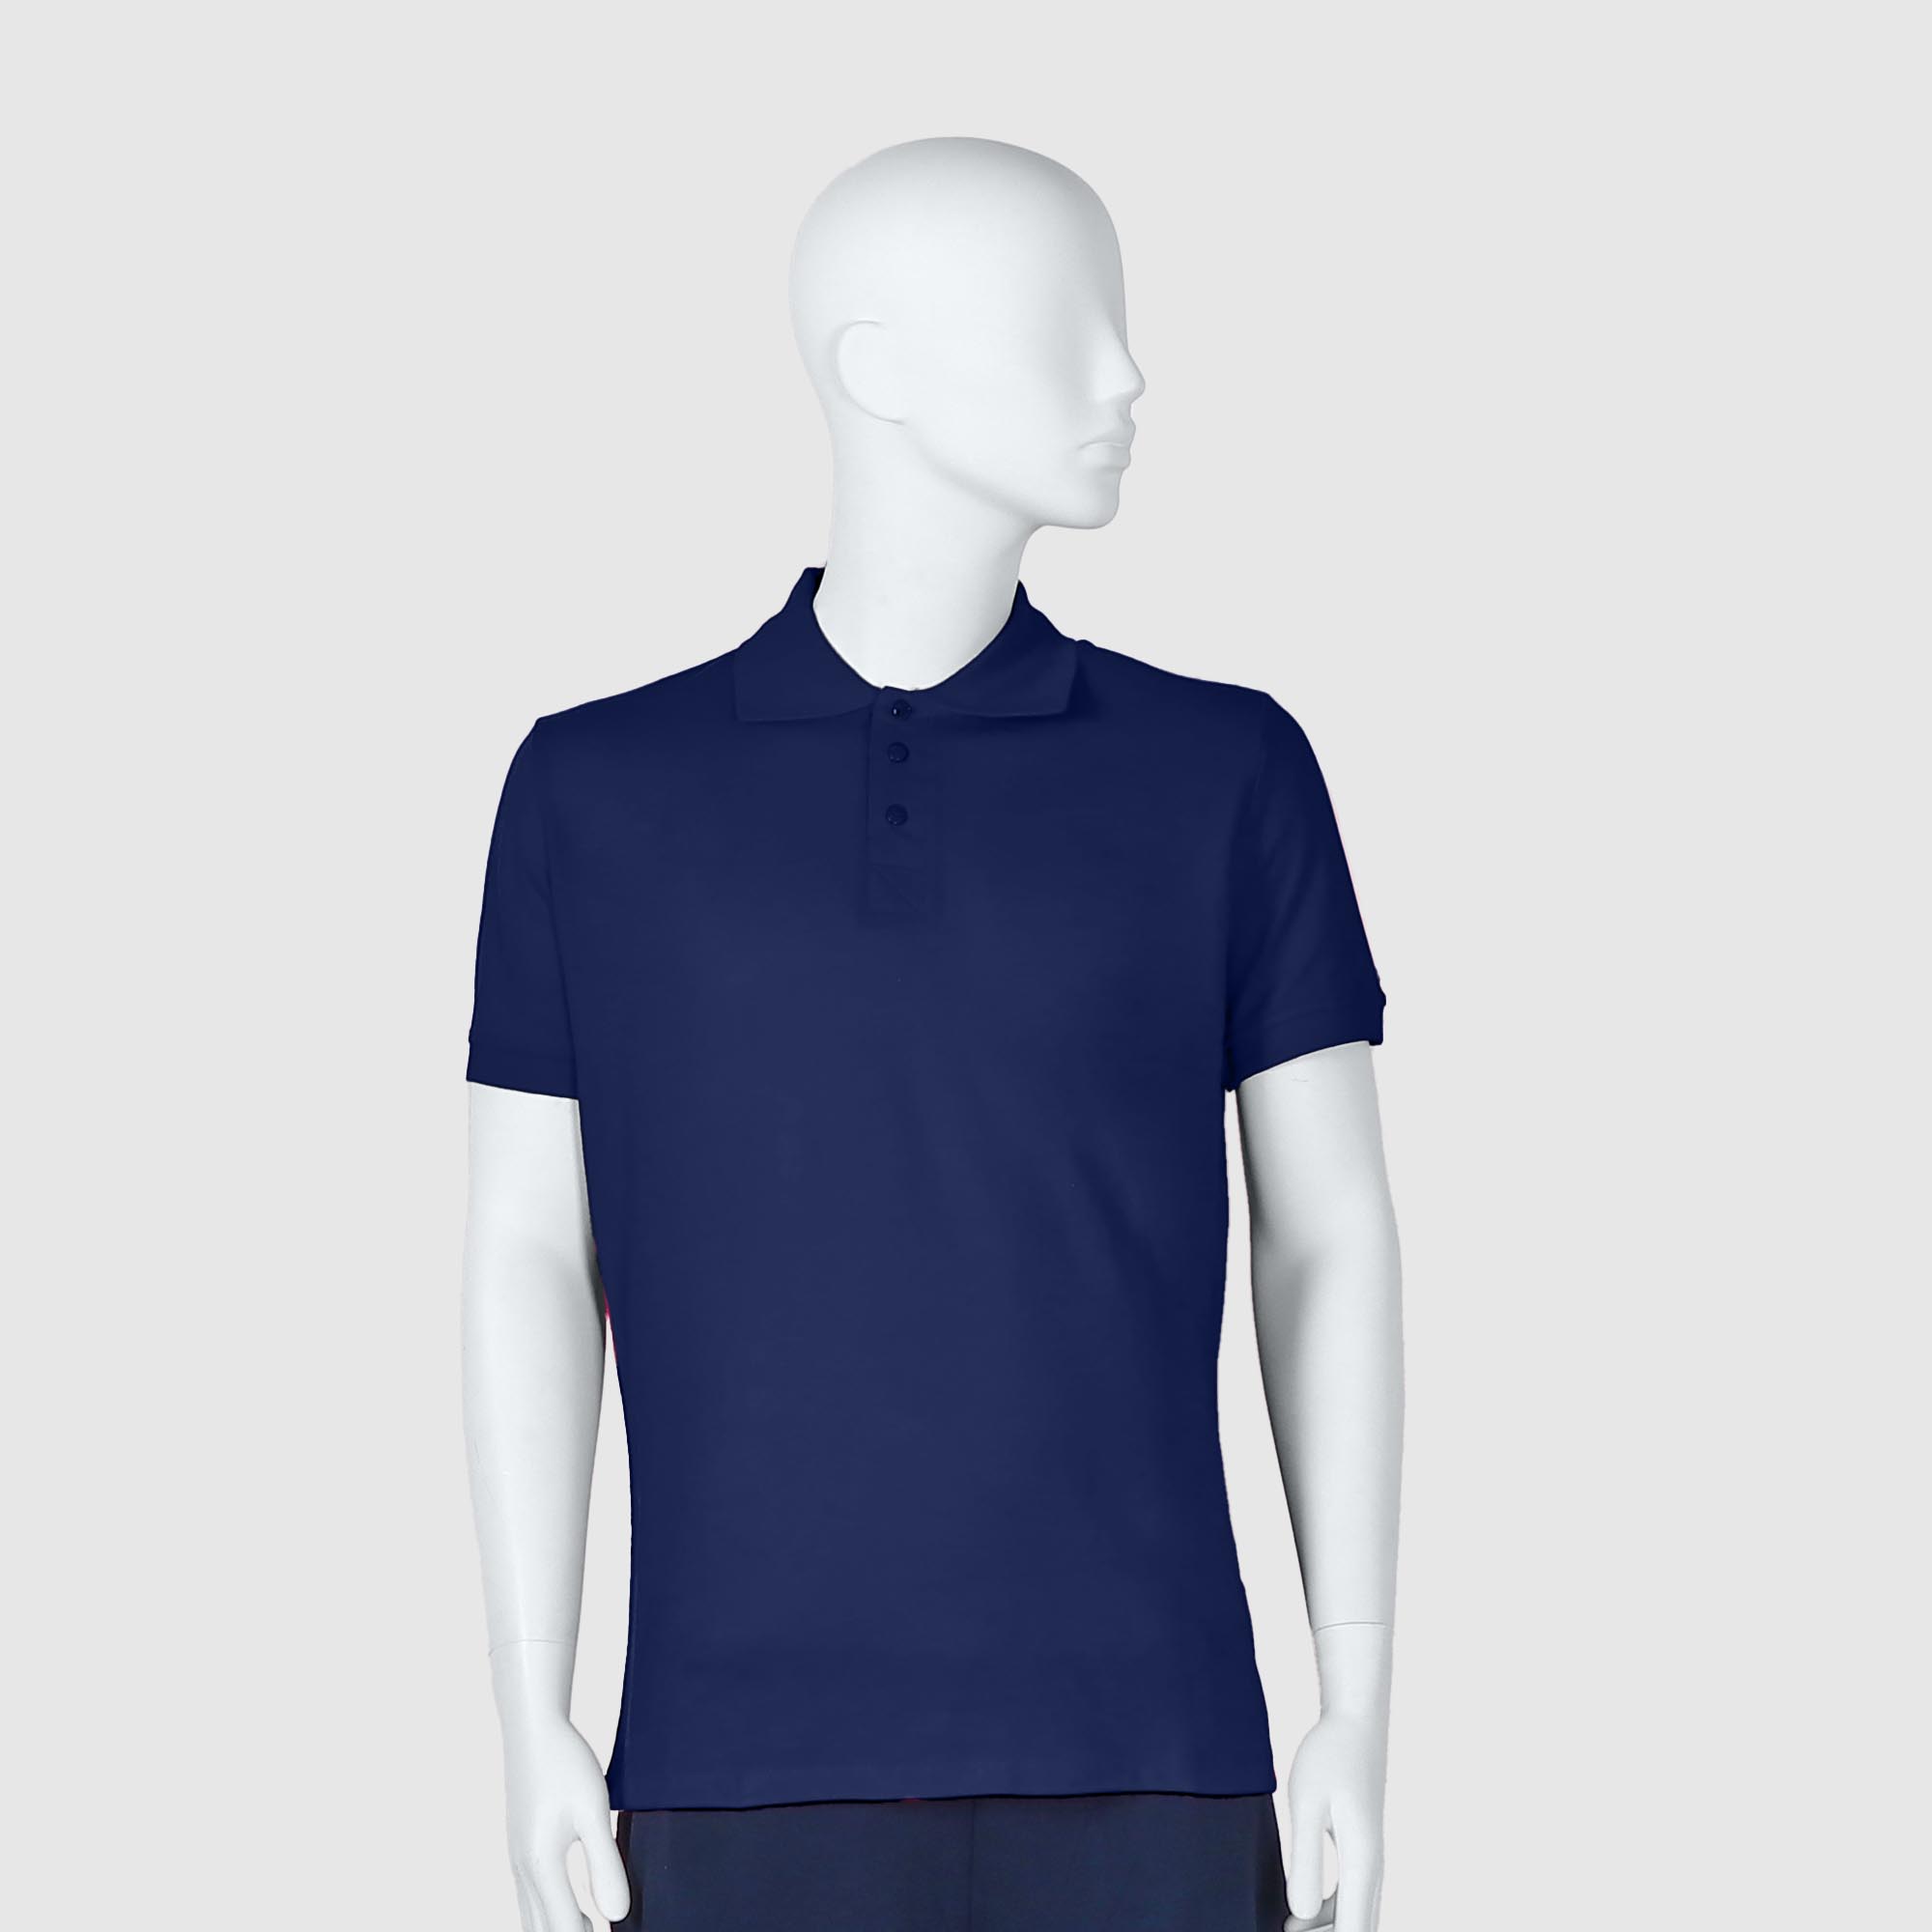 Мужская футболка-поло Diva Teks синяя (DTD-10), цвет синий, размер 52-54